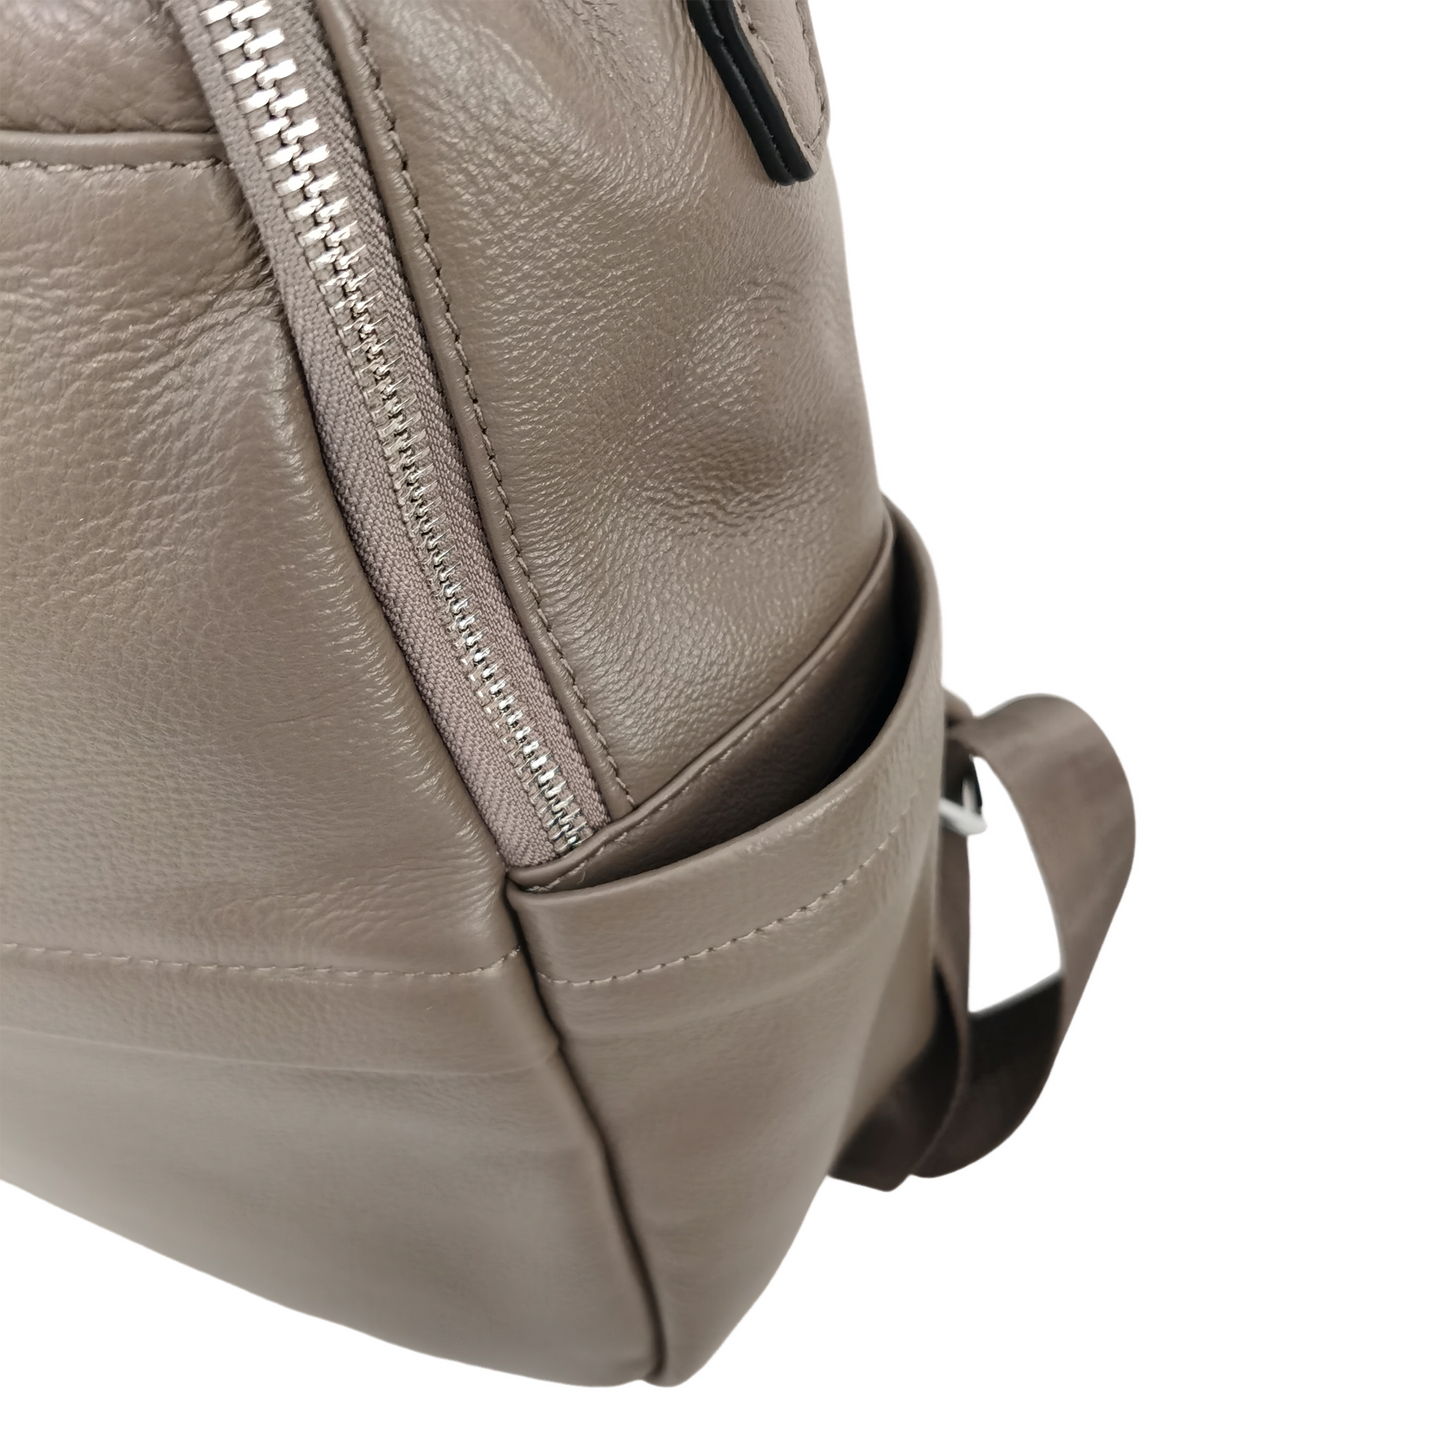 Women's multi zip cowhide leather backpack